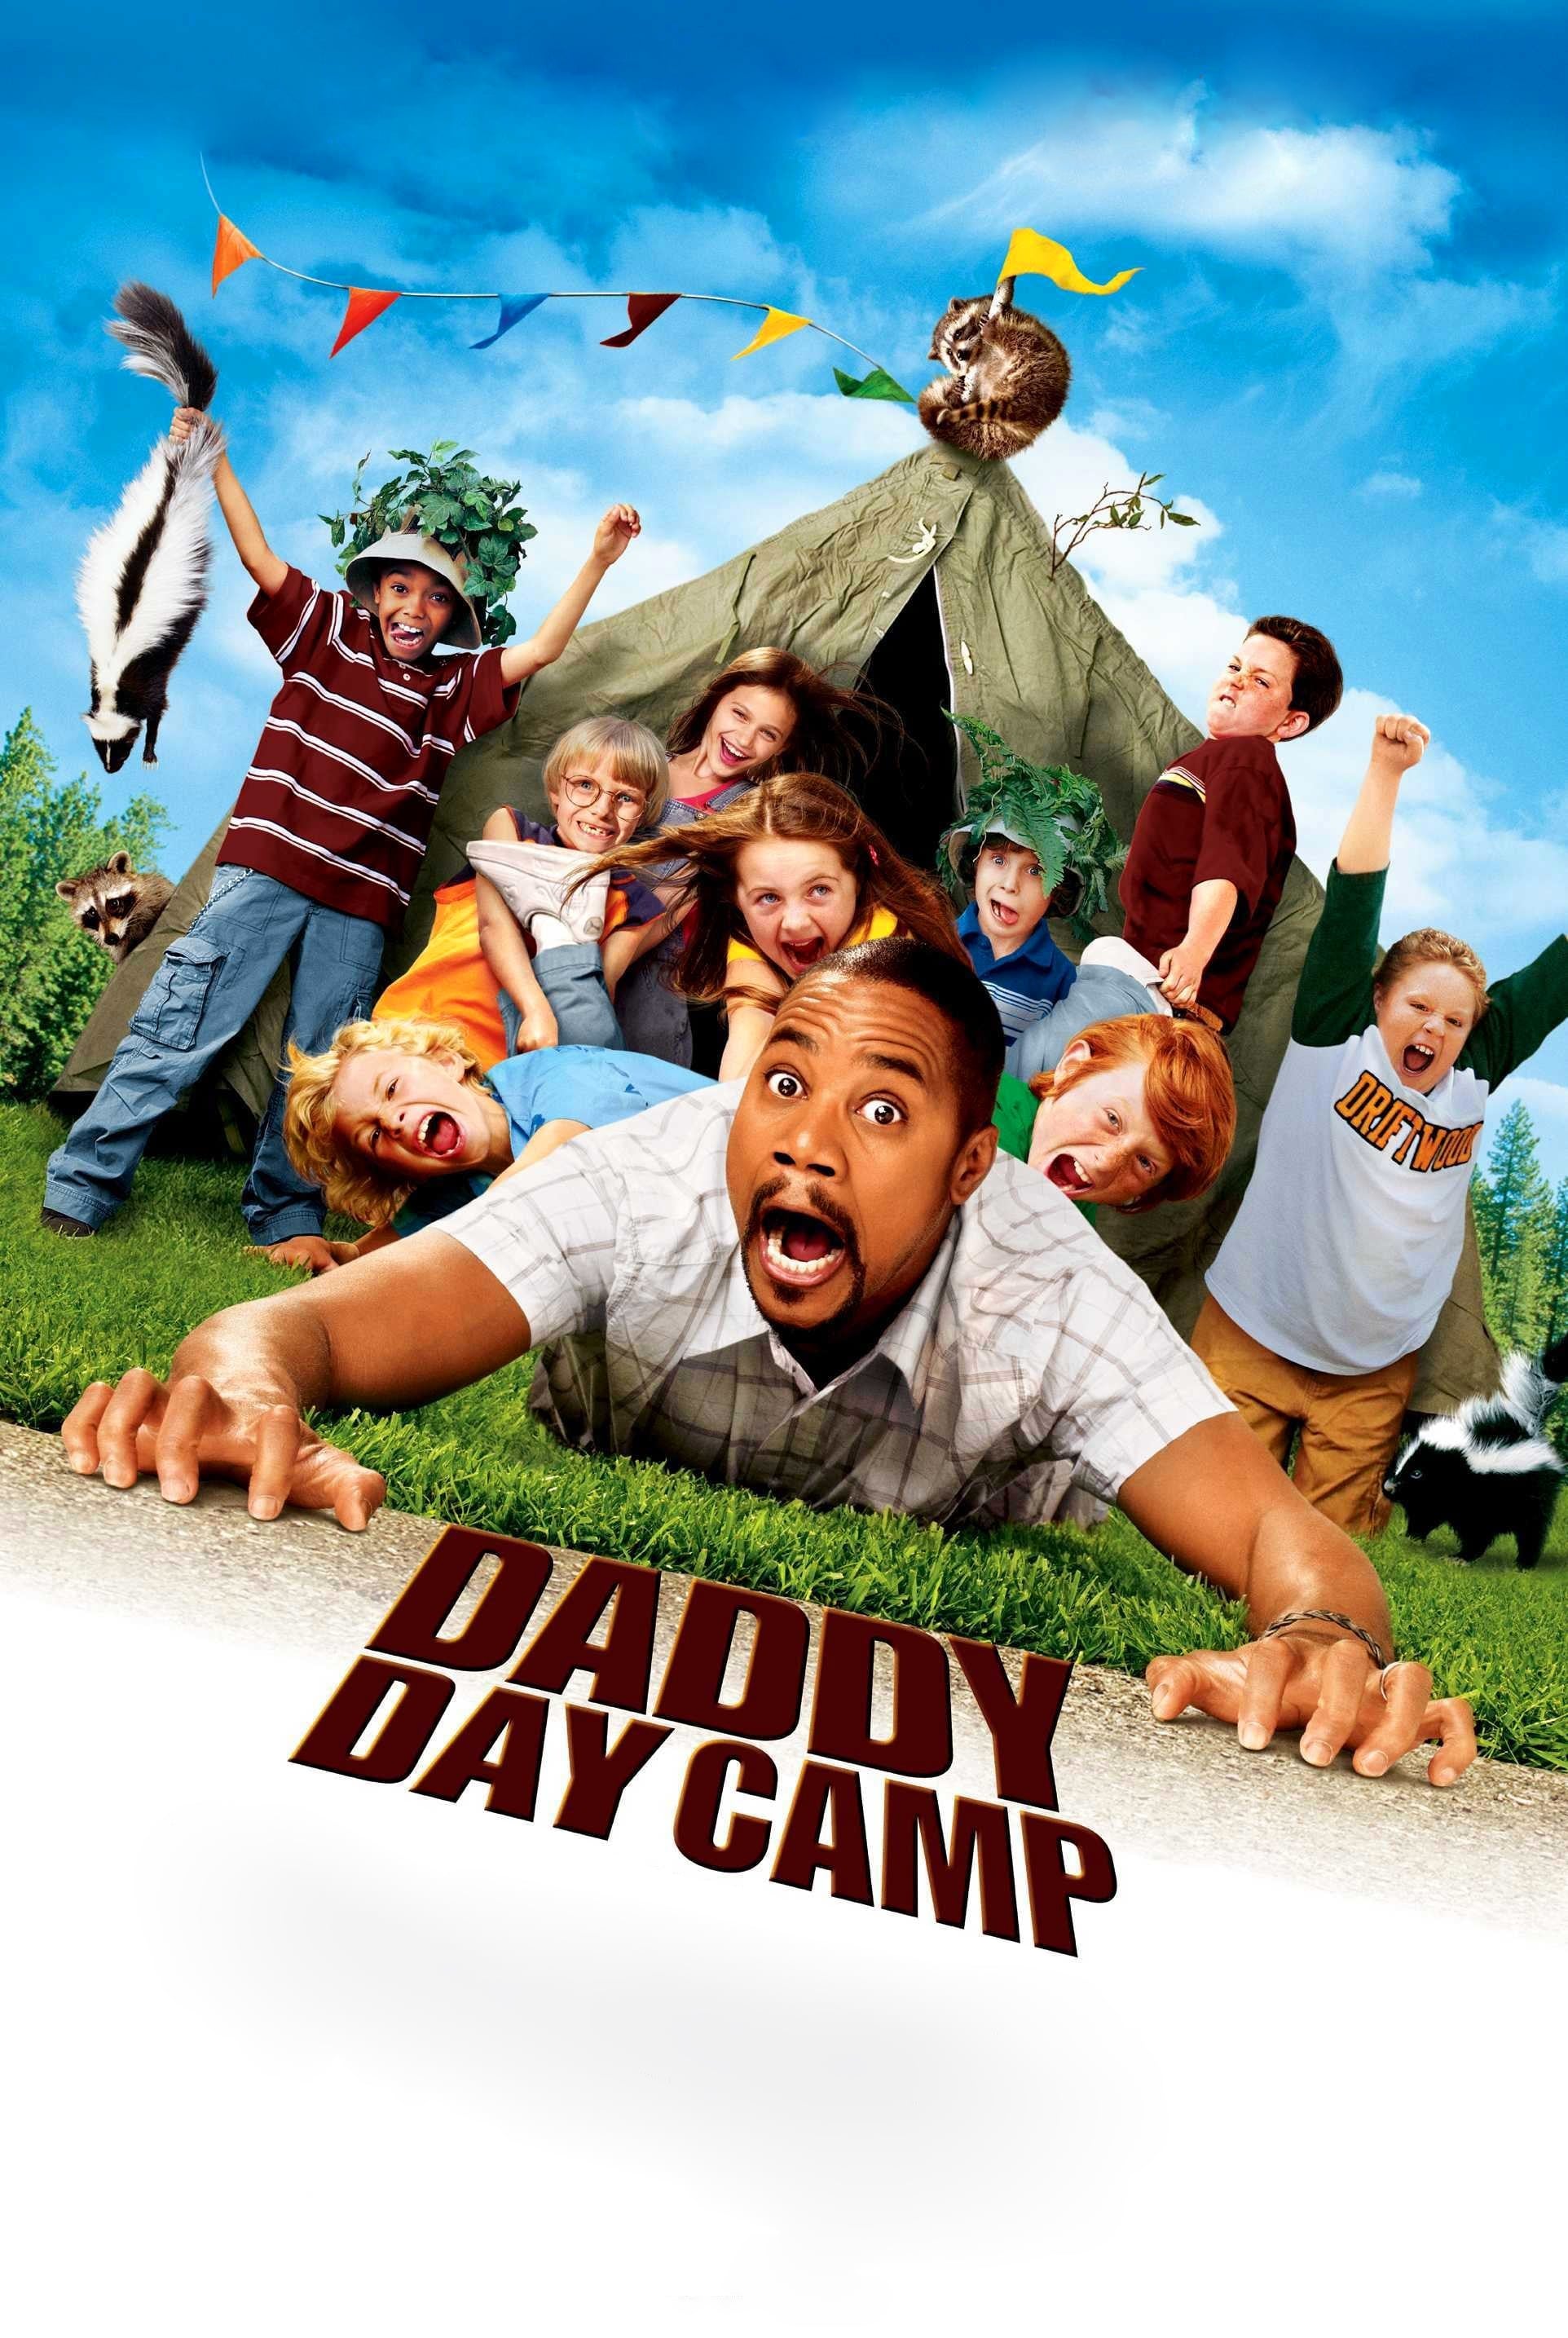 Der Kindergarten Daddy 2: Das Feriencamp (2007)